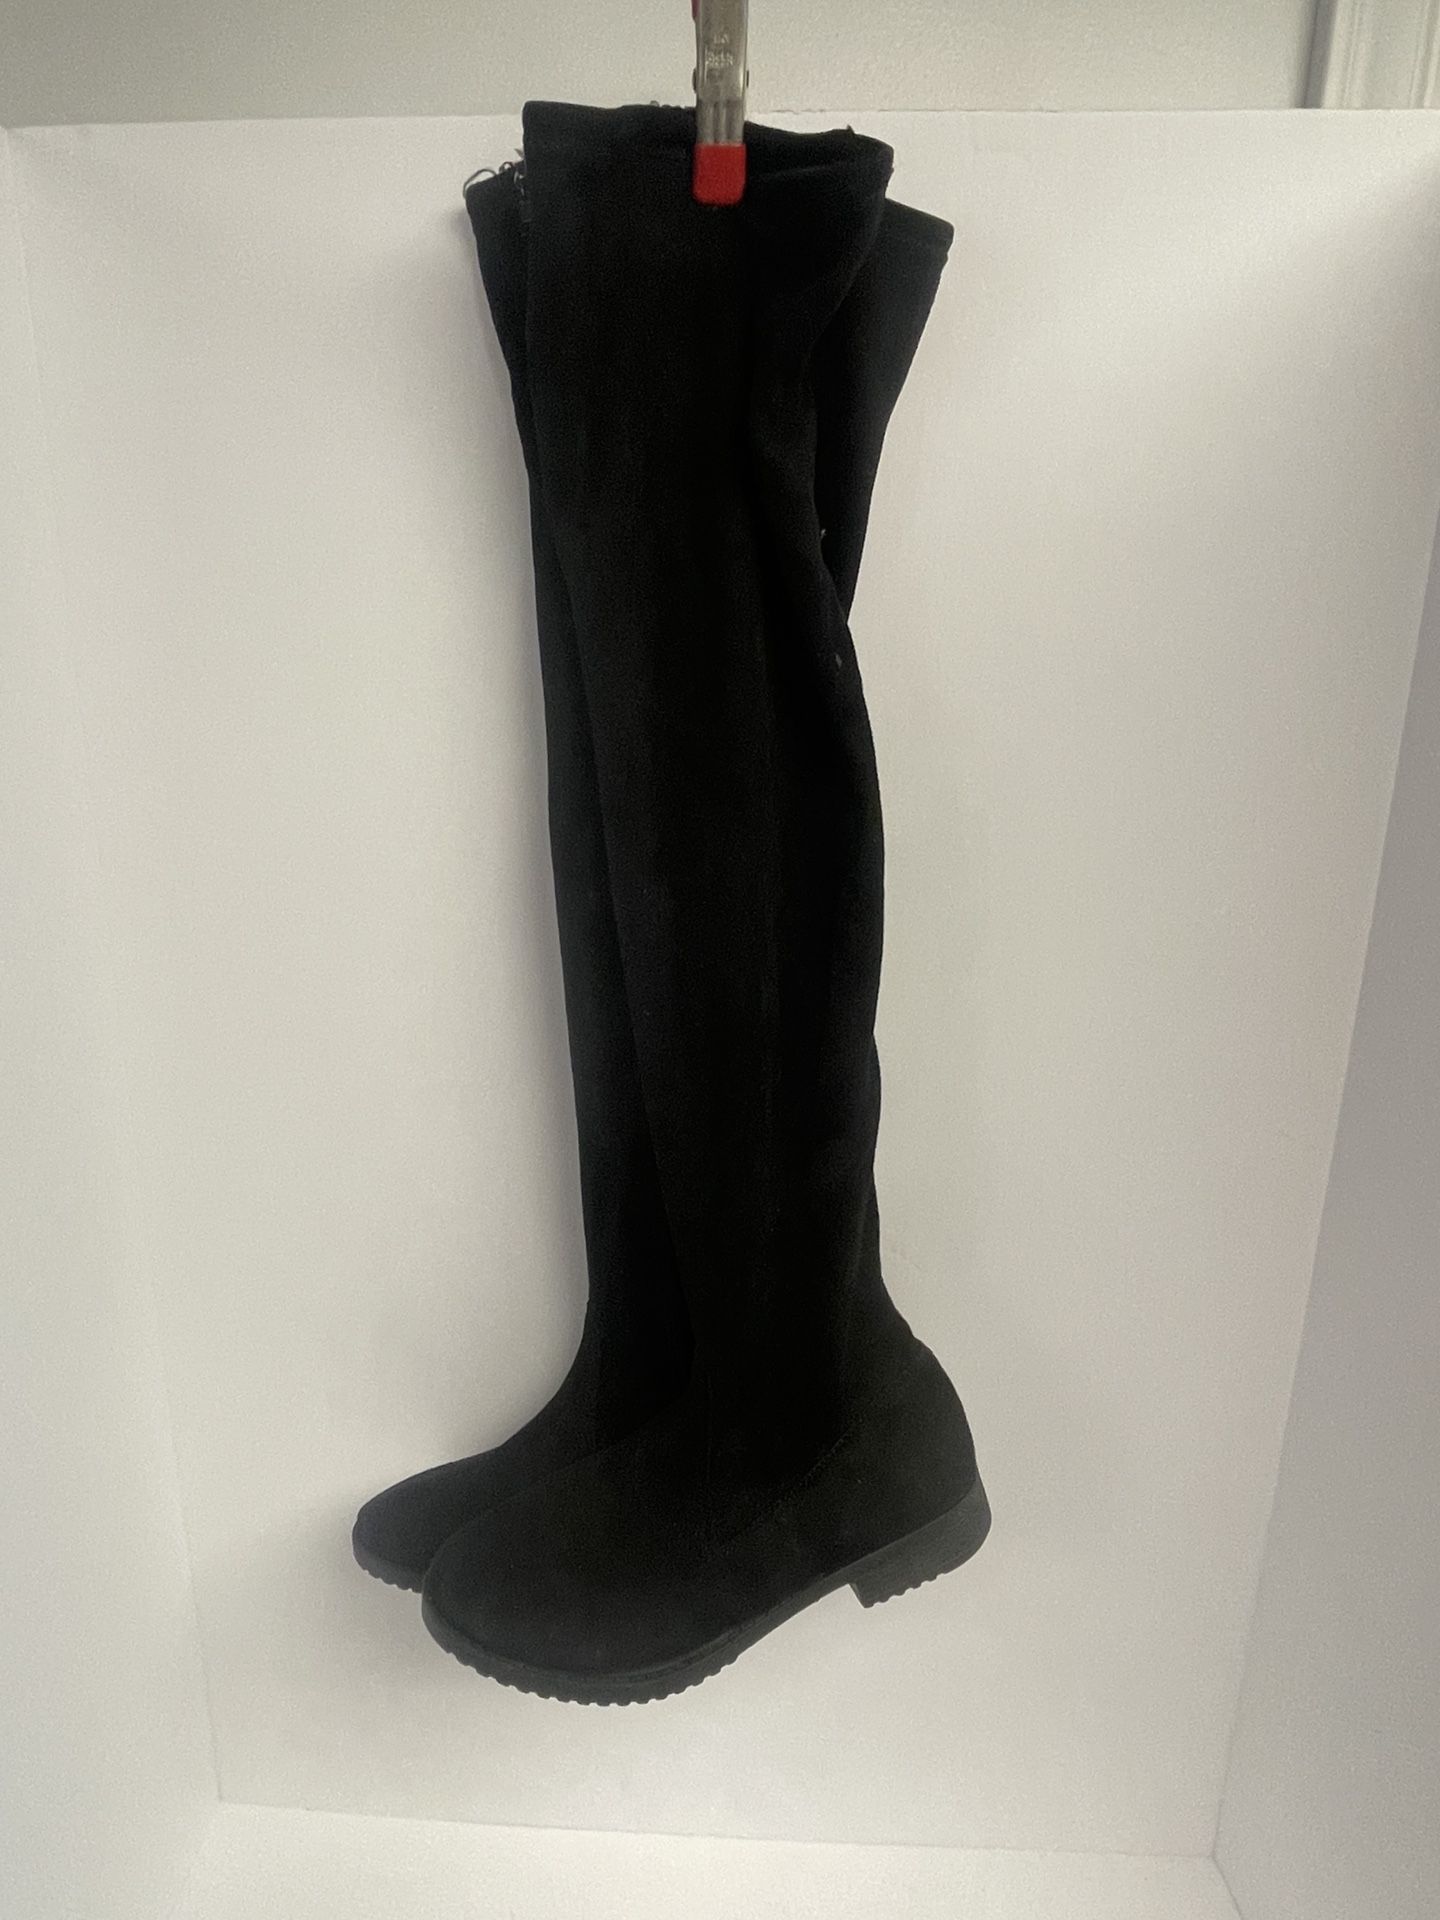 Rouge Helium Womens thigh high boots, black, 7.5M zipper side velvet like I530